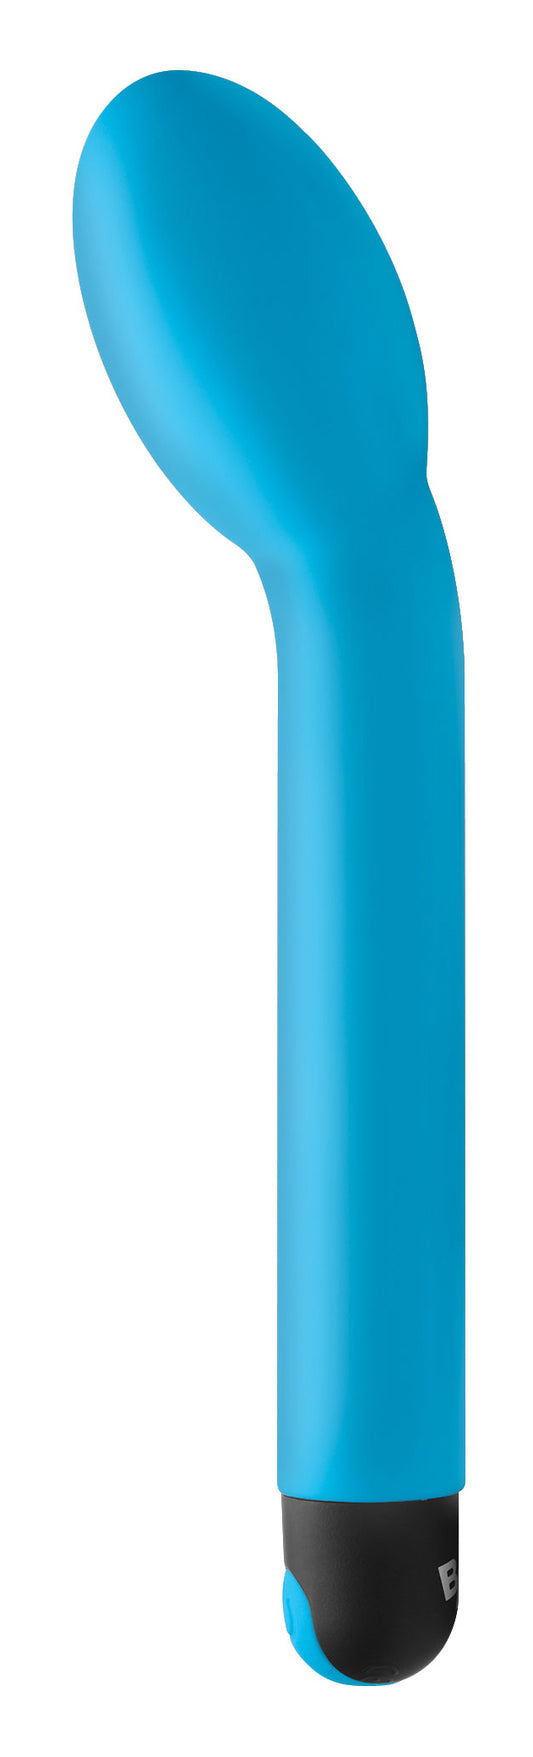 10x G-Spot Vibrator - Blue